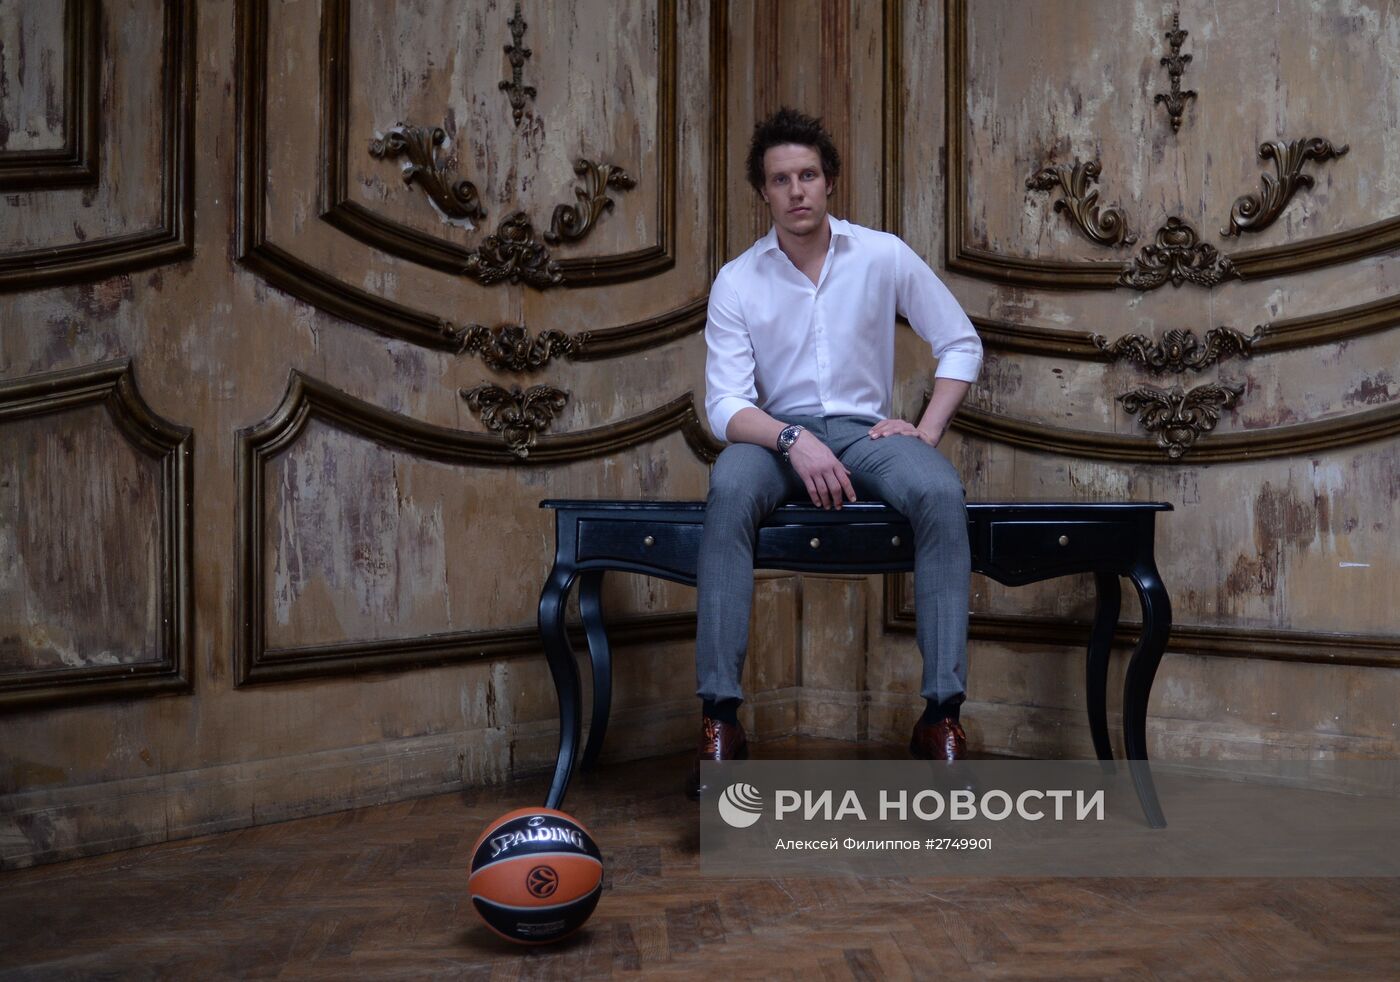 Баскетболисты ЦСКА приняли участие в съемках для календаря